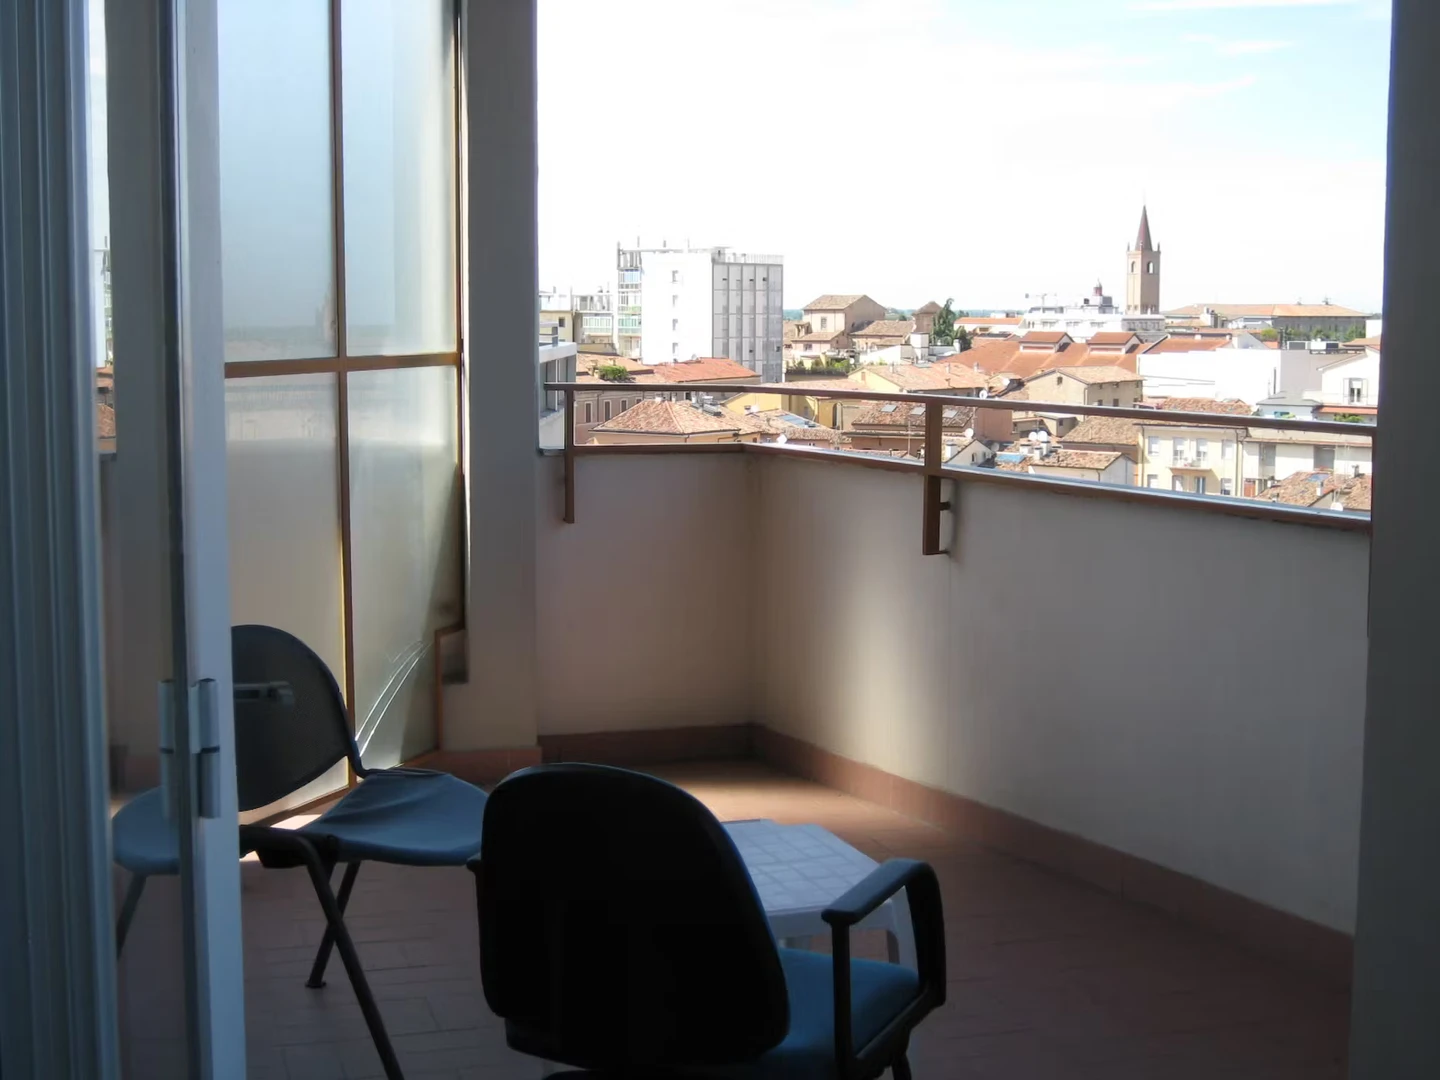 Forlì de çift kişilik yataklı kiralık oda